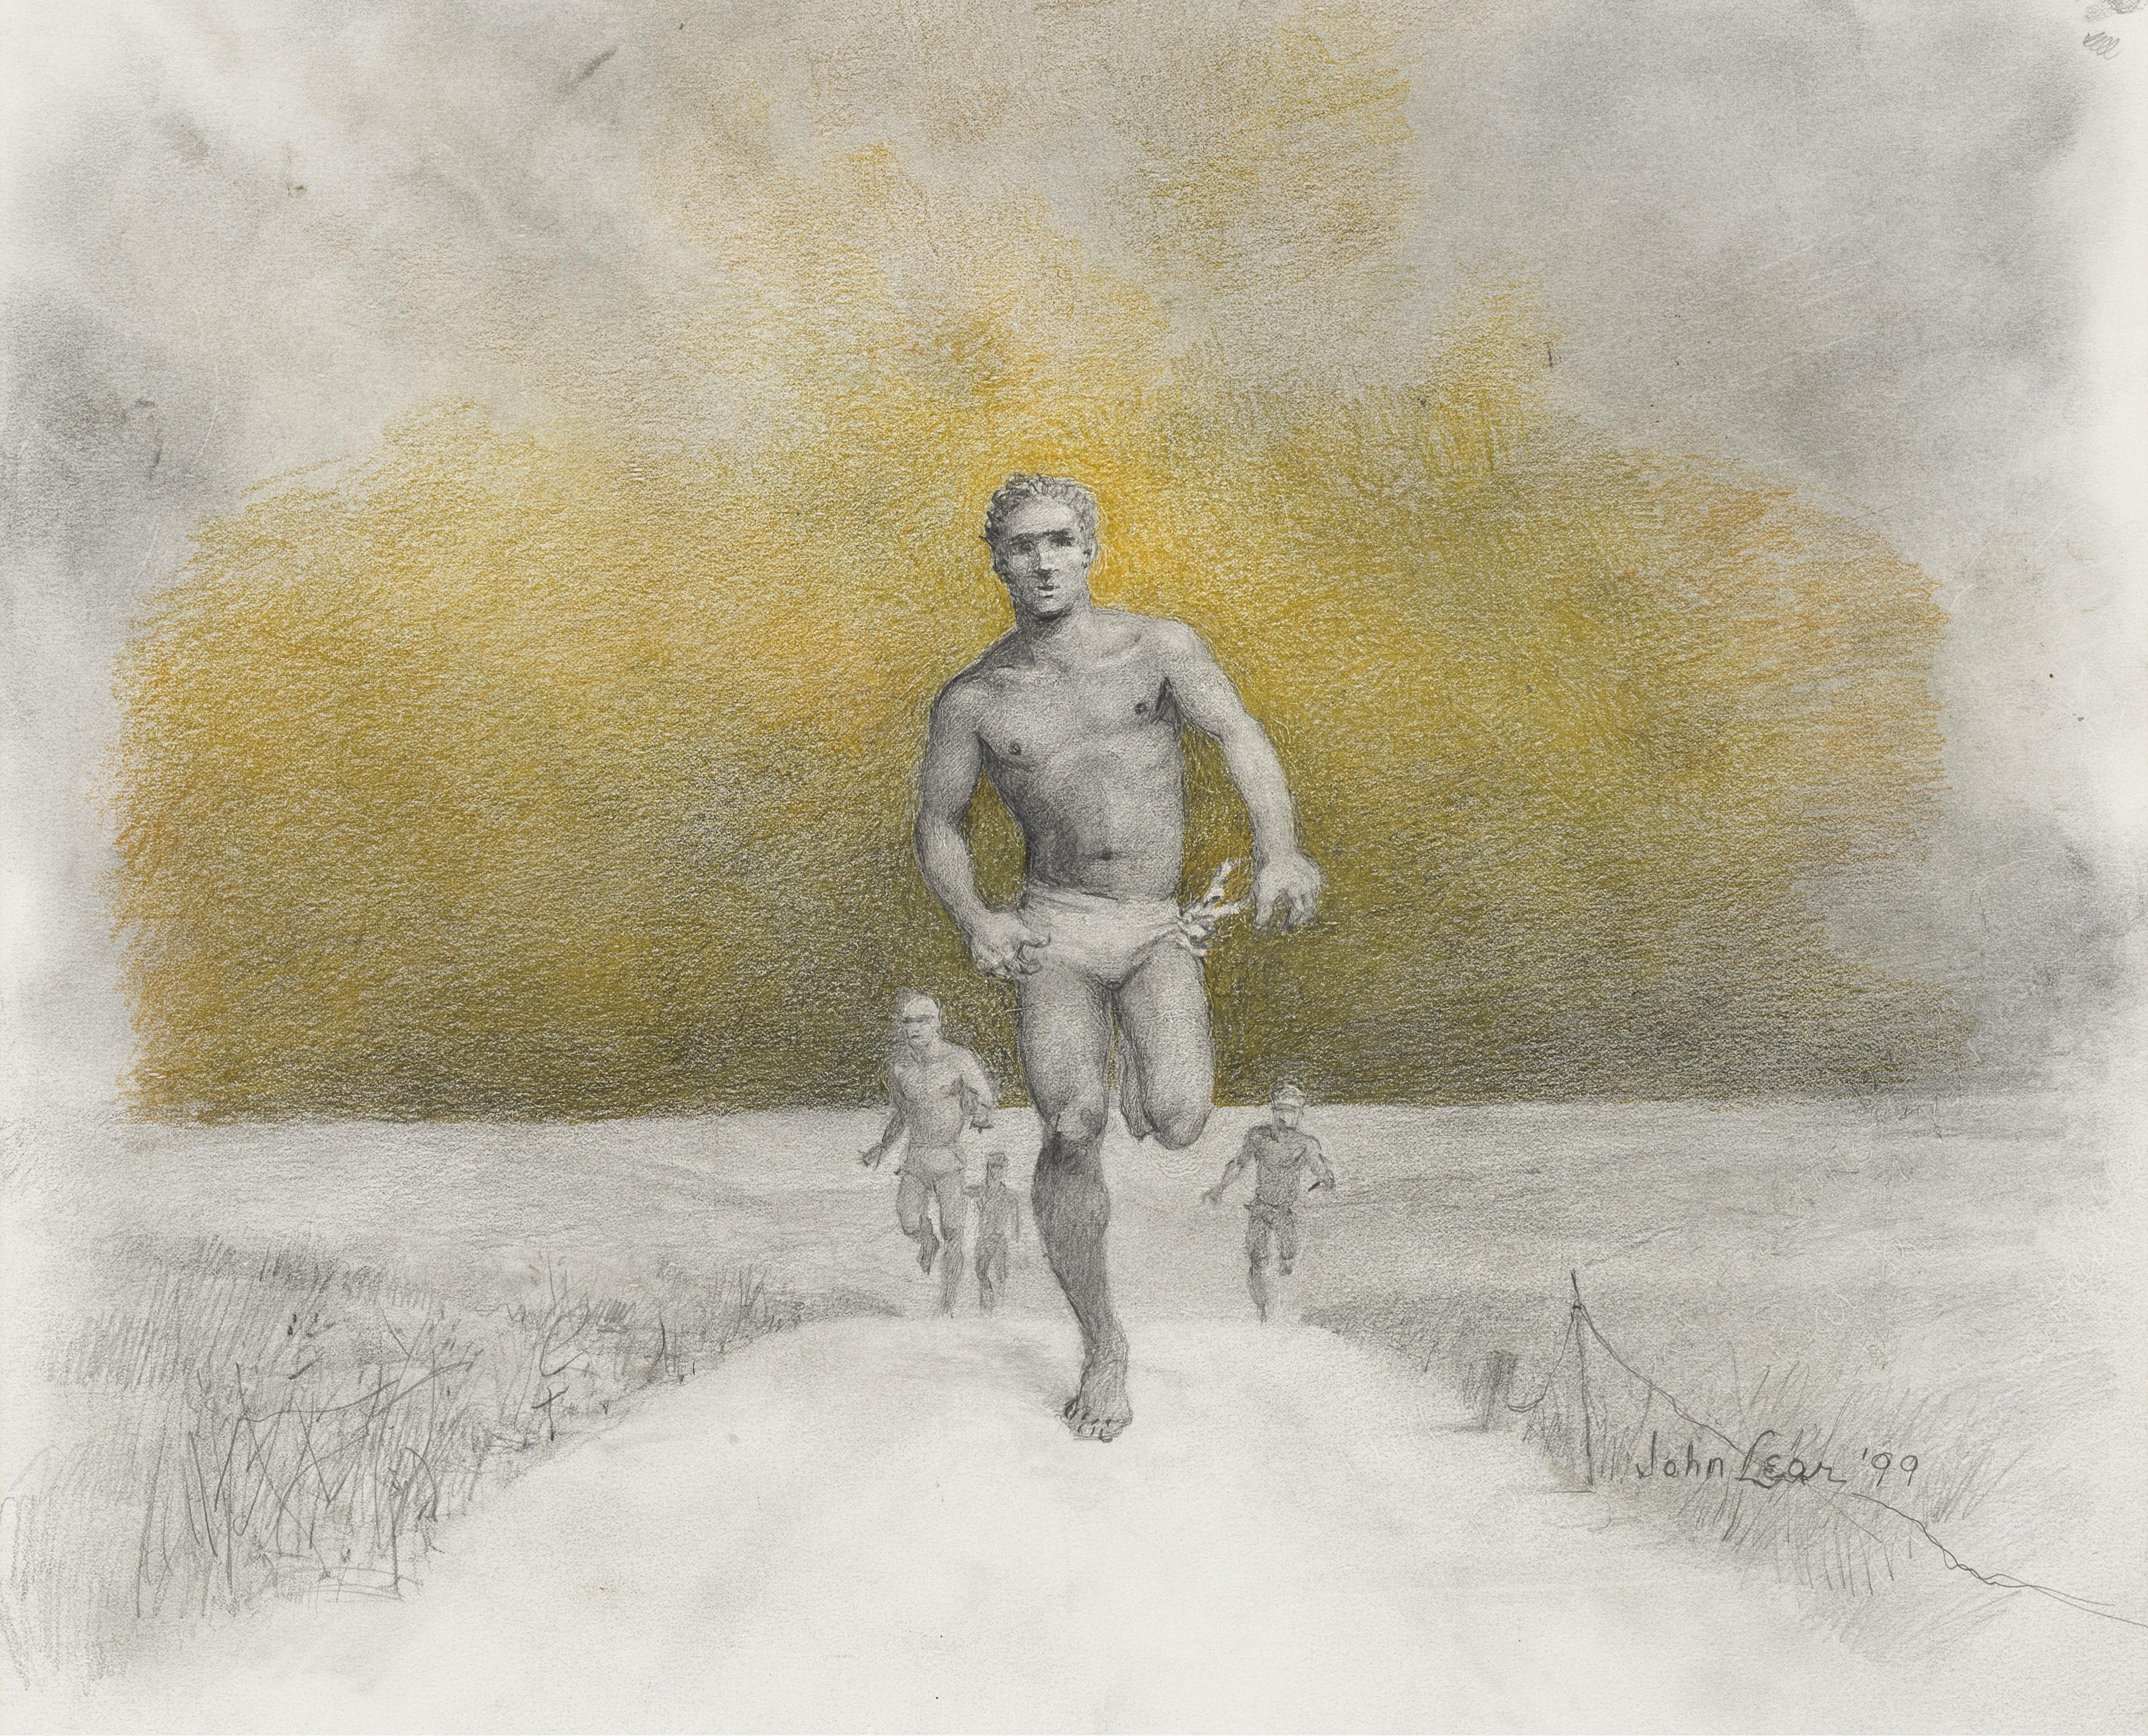 Laufende Männer – Art von John B Lear